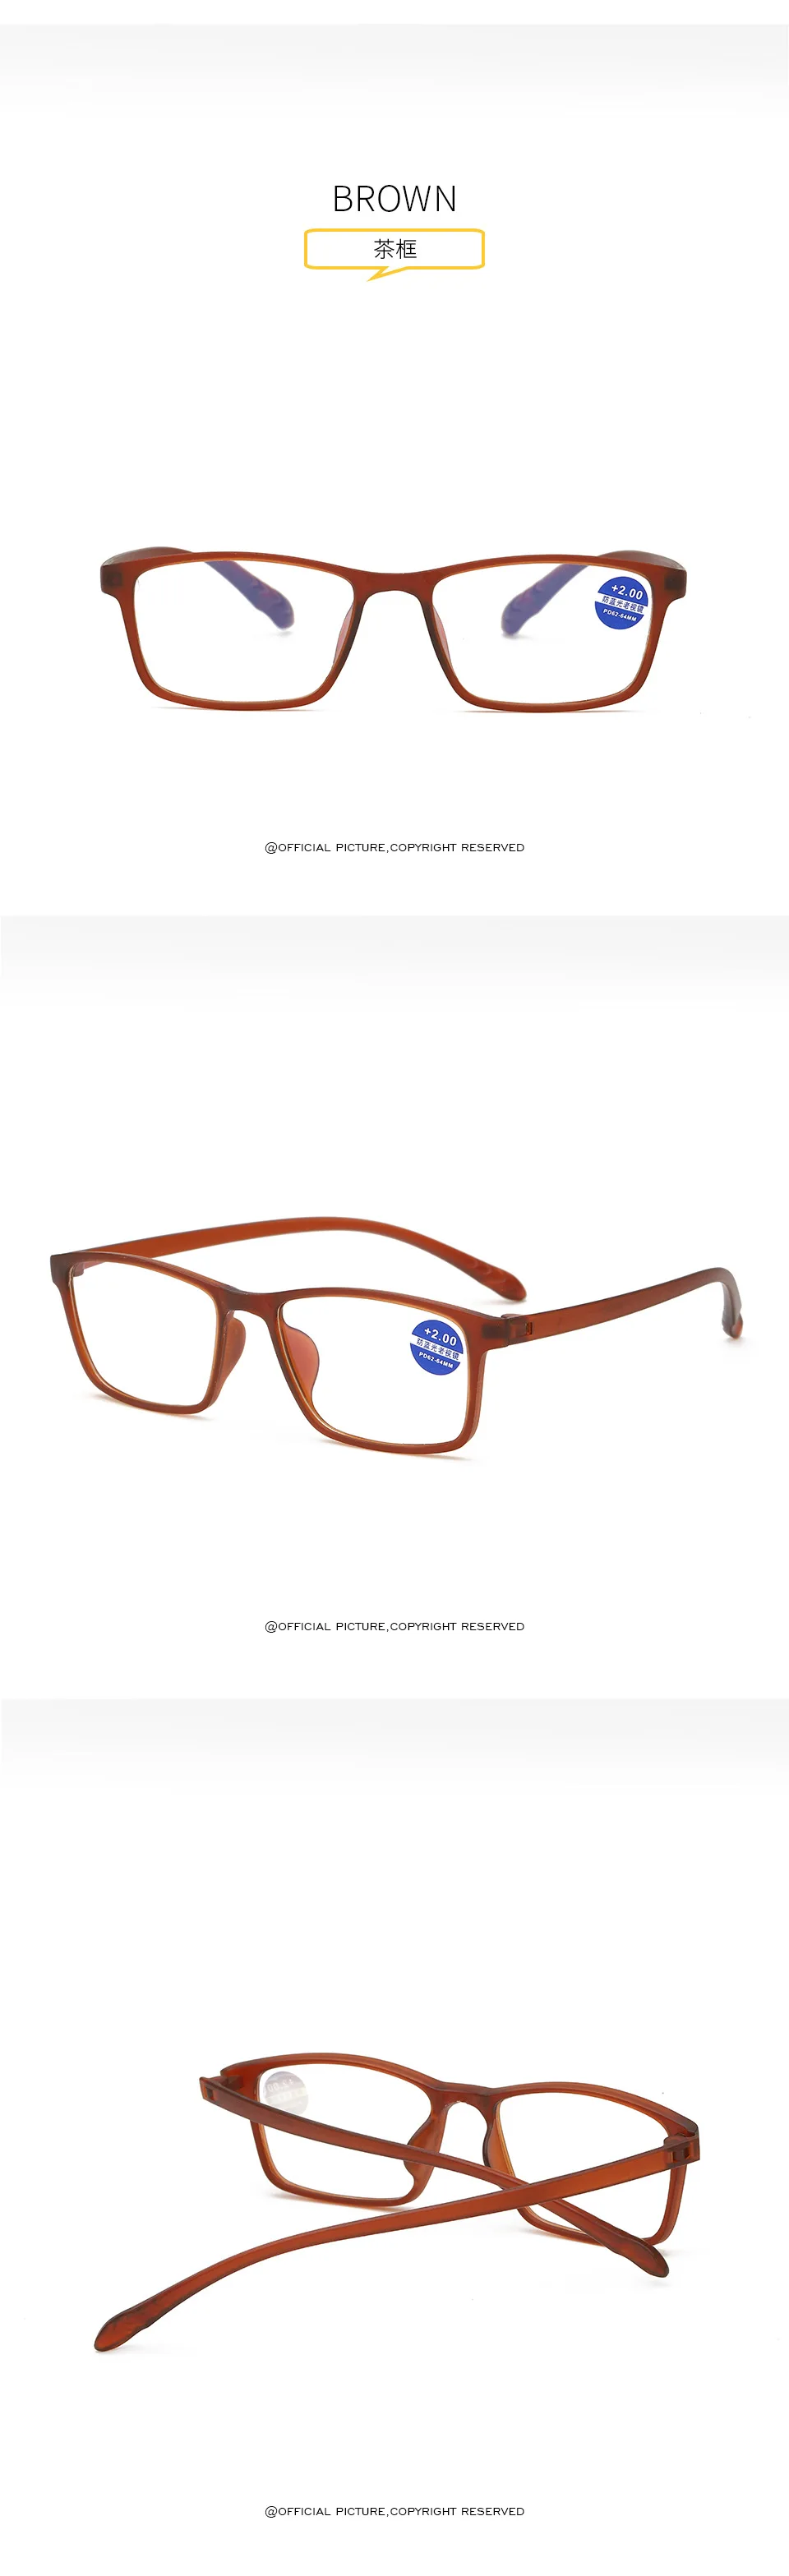 Очки для чтения с защитой от синего излучения, мужские очки с голубым покрытием, игровые очки для защиты компьютера, очки для глаз, оправы